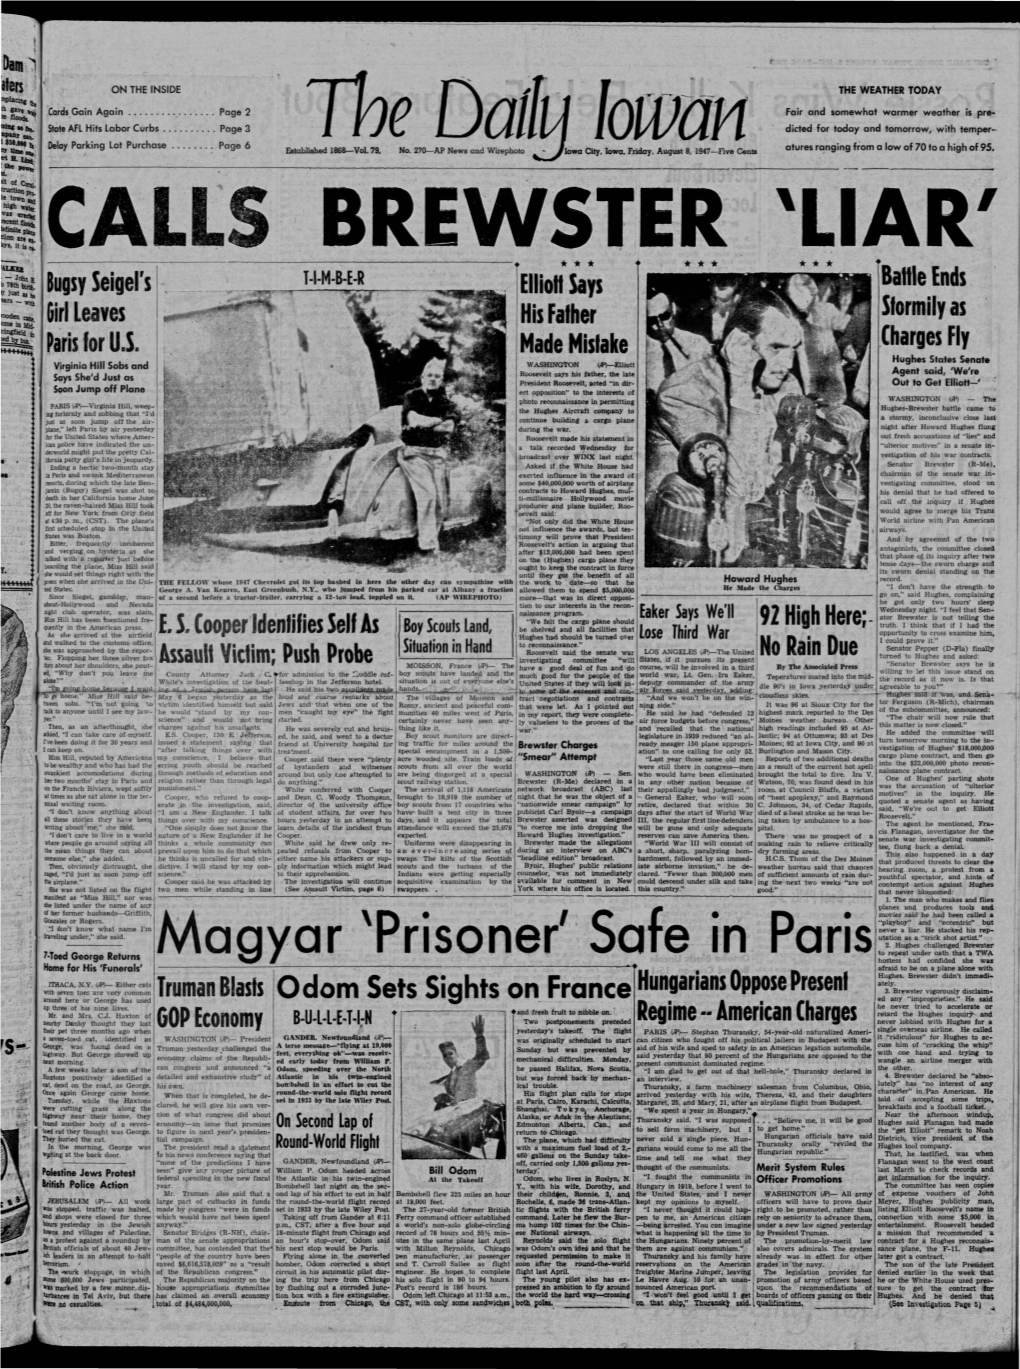 Daily Iowan (Iowa City, Iowa), 1947-08-08